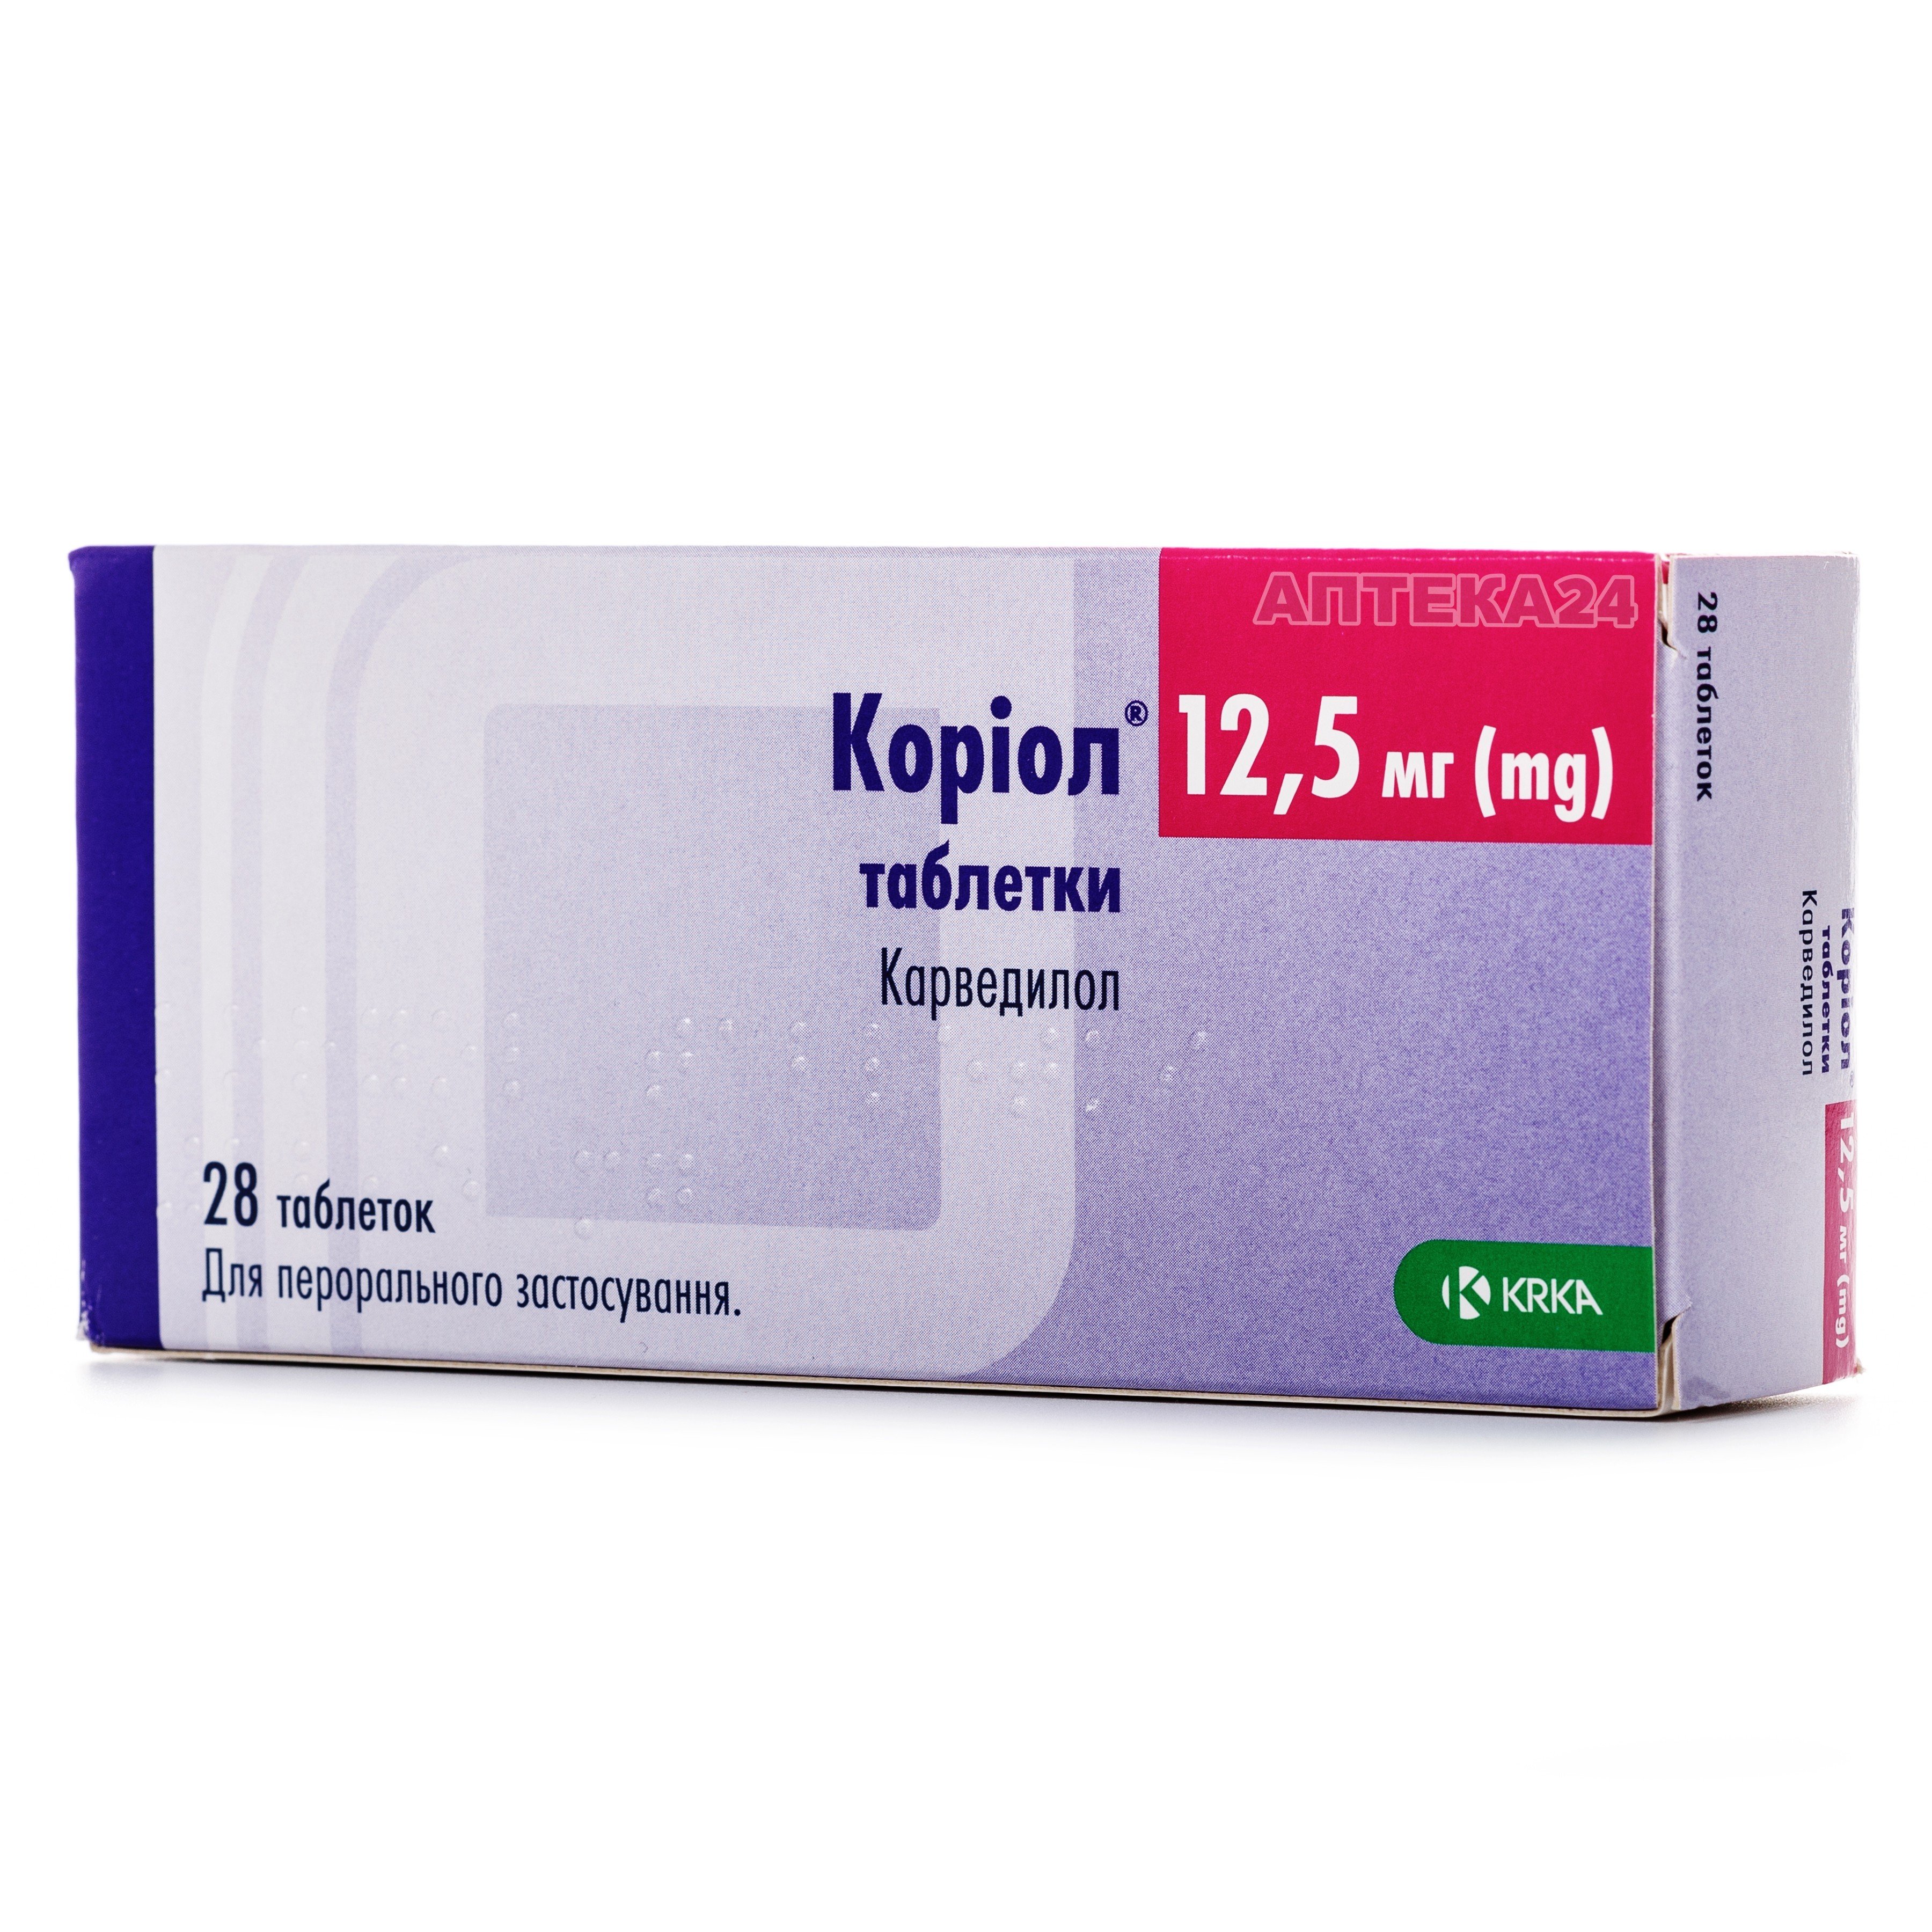 Аналоги препарата Кориол таблетки по 12,5 мг, 28 шт. - KRKA: по .